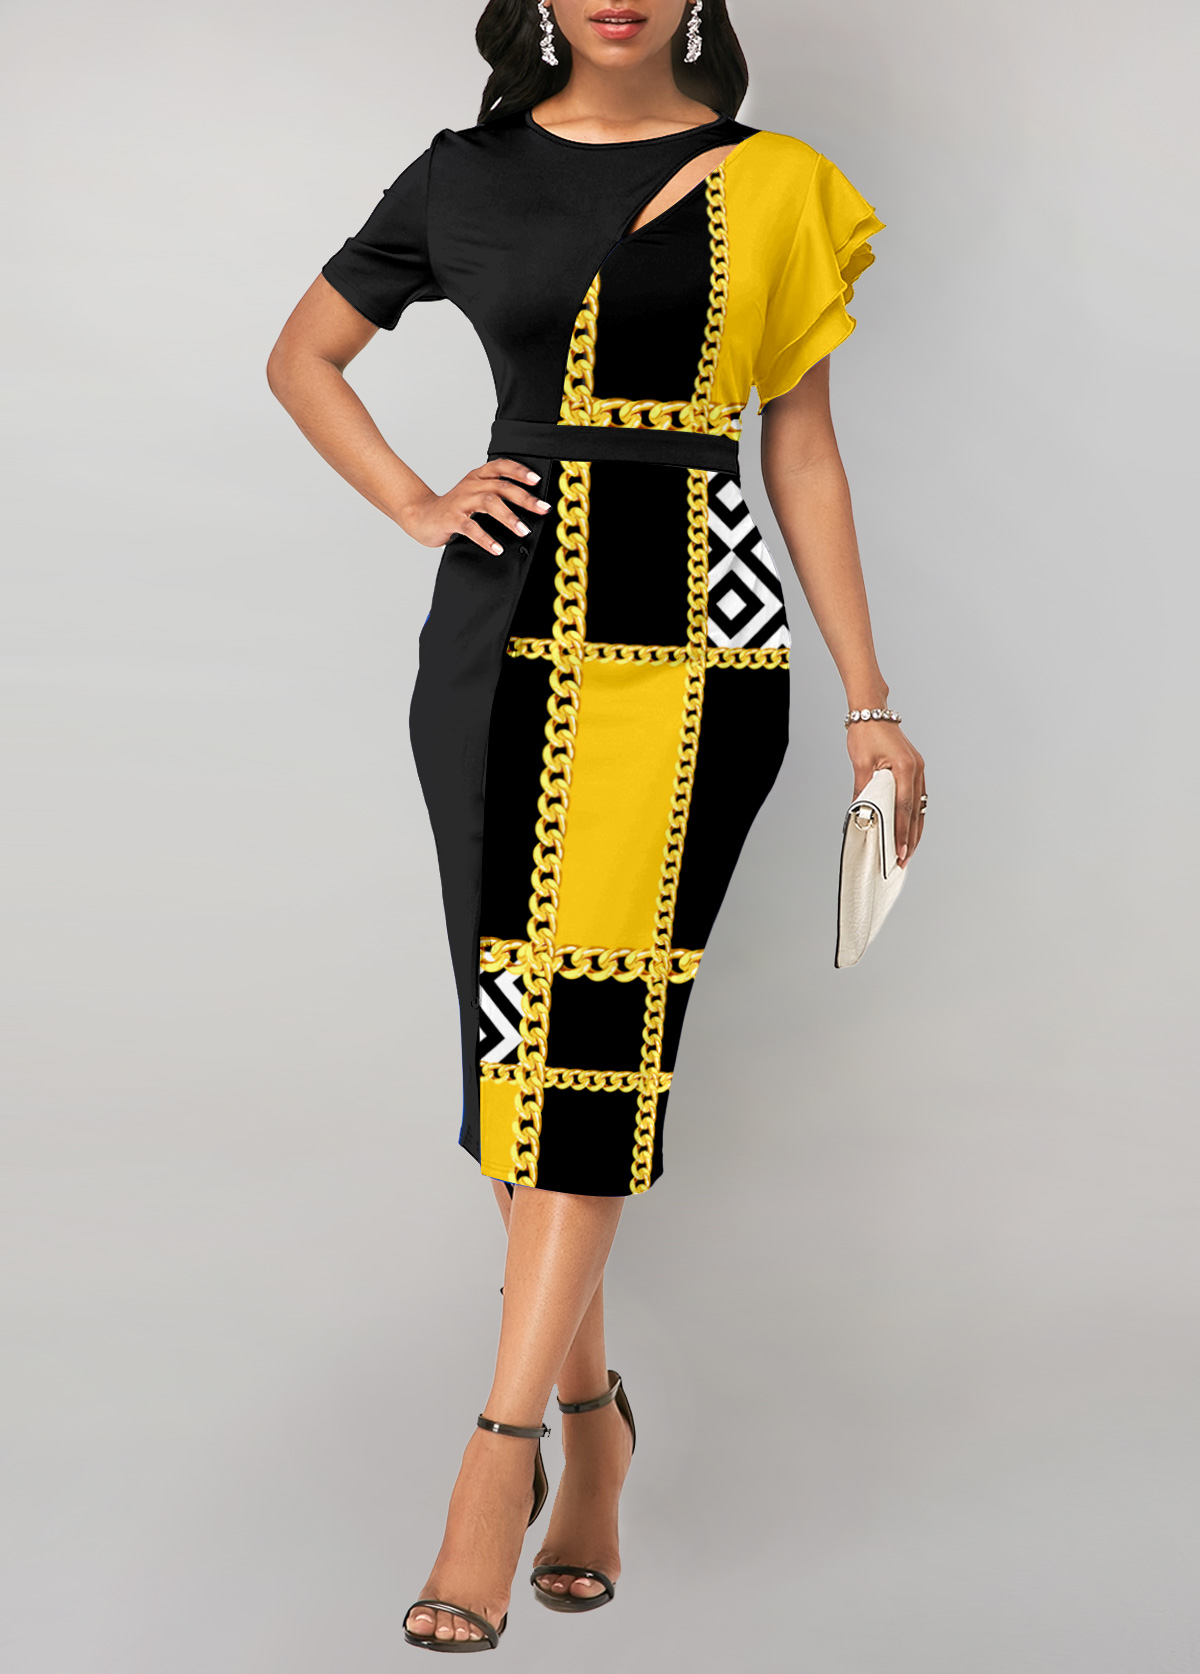 Geometric Print Cut Out Yellow Bodycon Dress